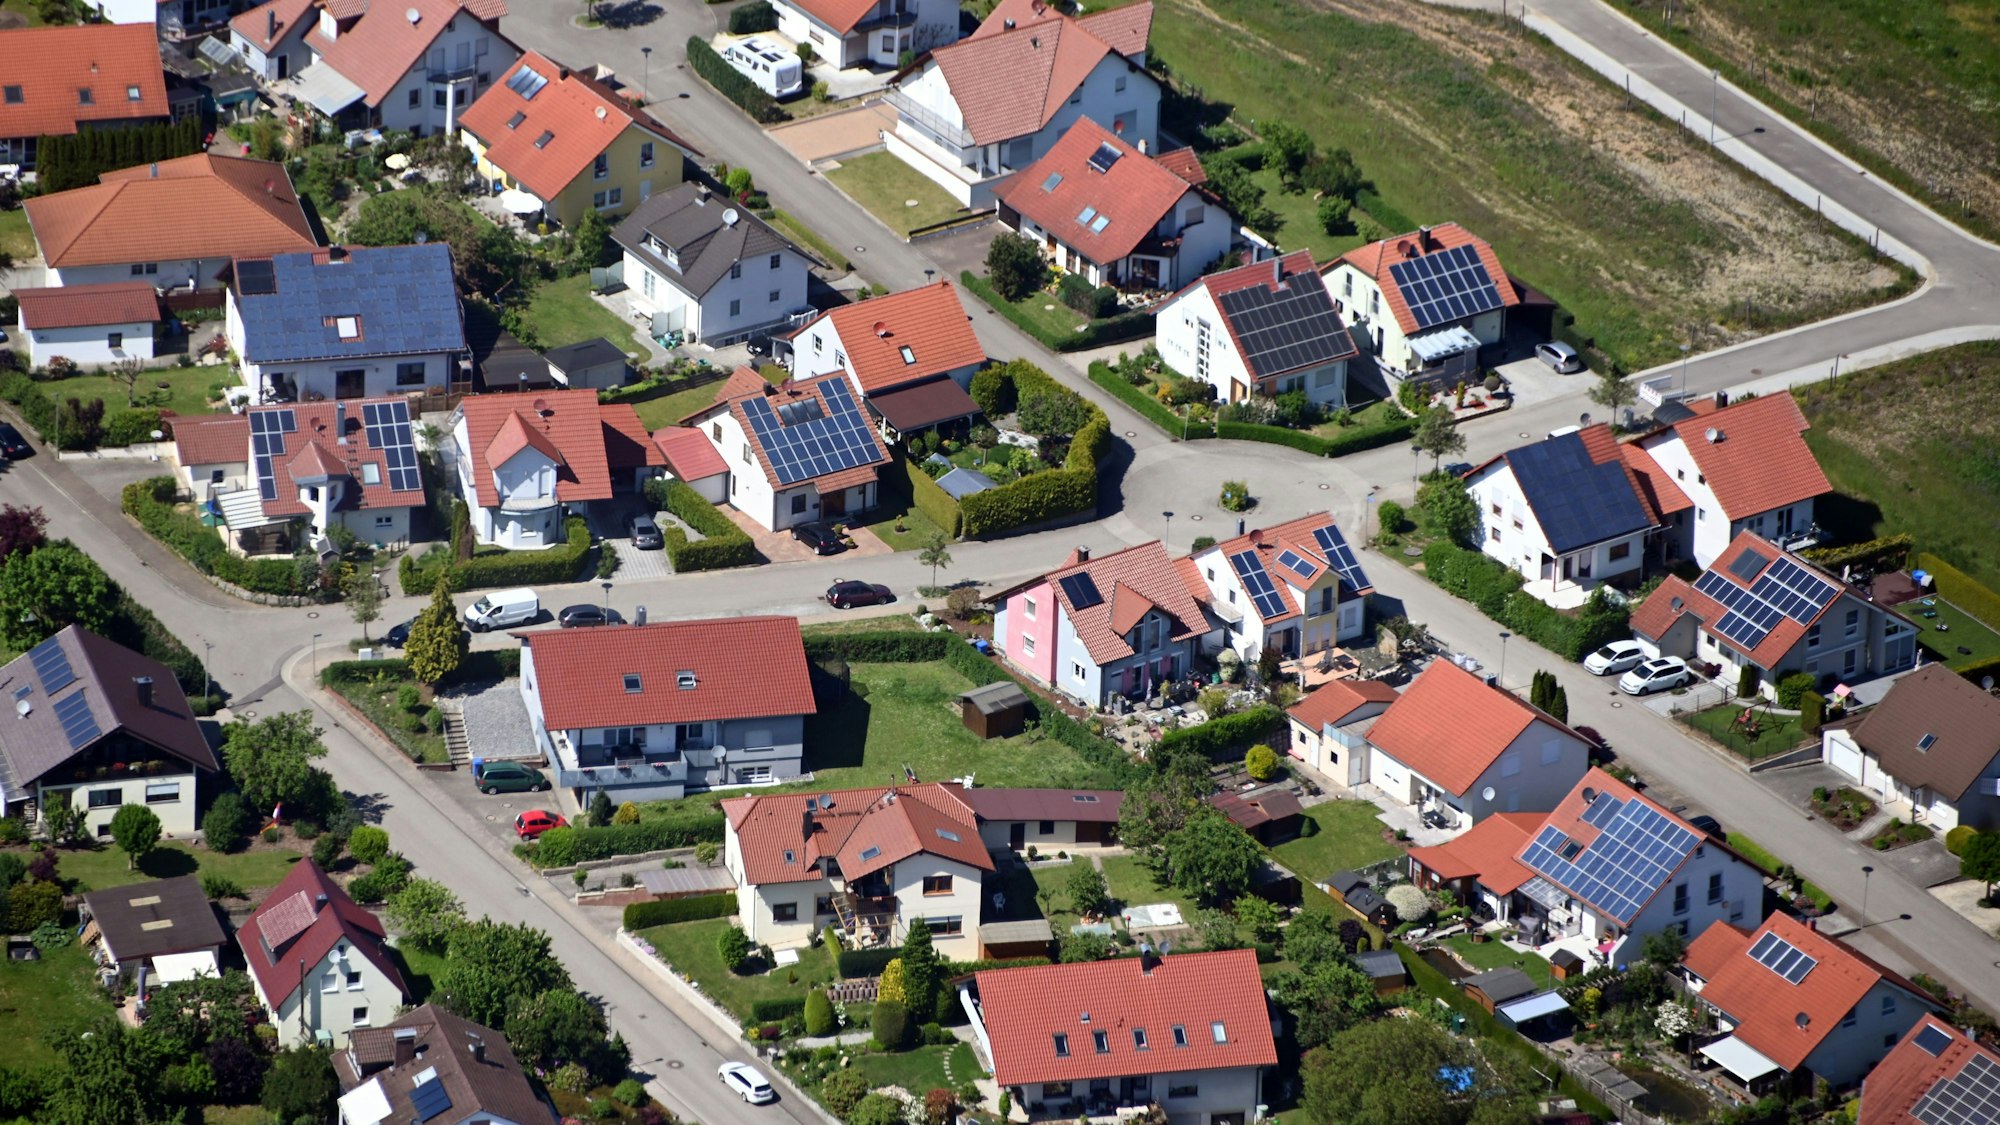 Auf Dächern von Häusern in einer Gemeinde beim Landkreis Heilbronn sind Solaranlagen angebracht.